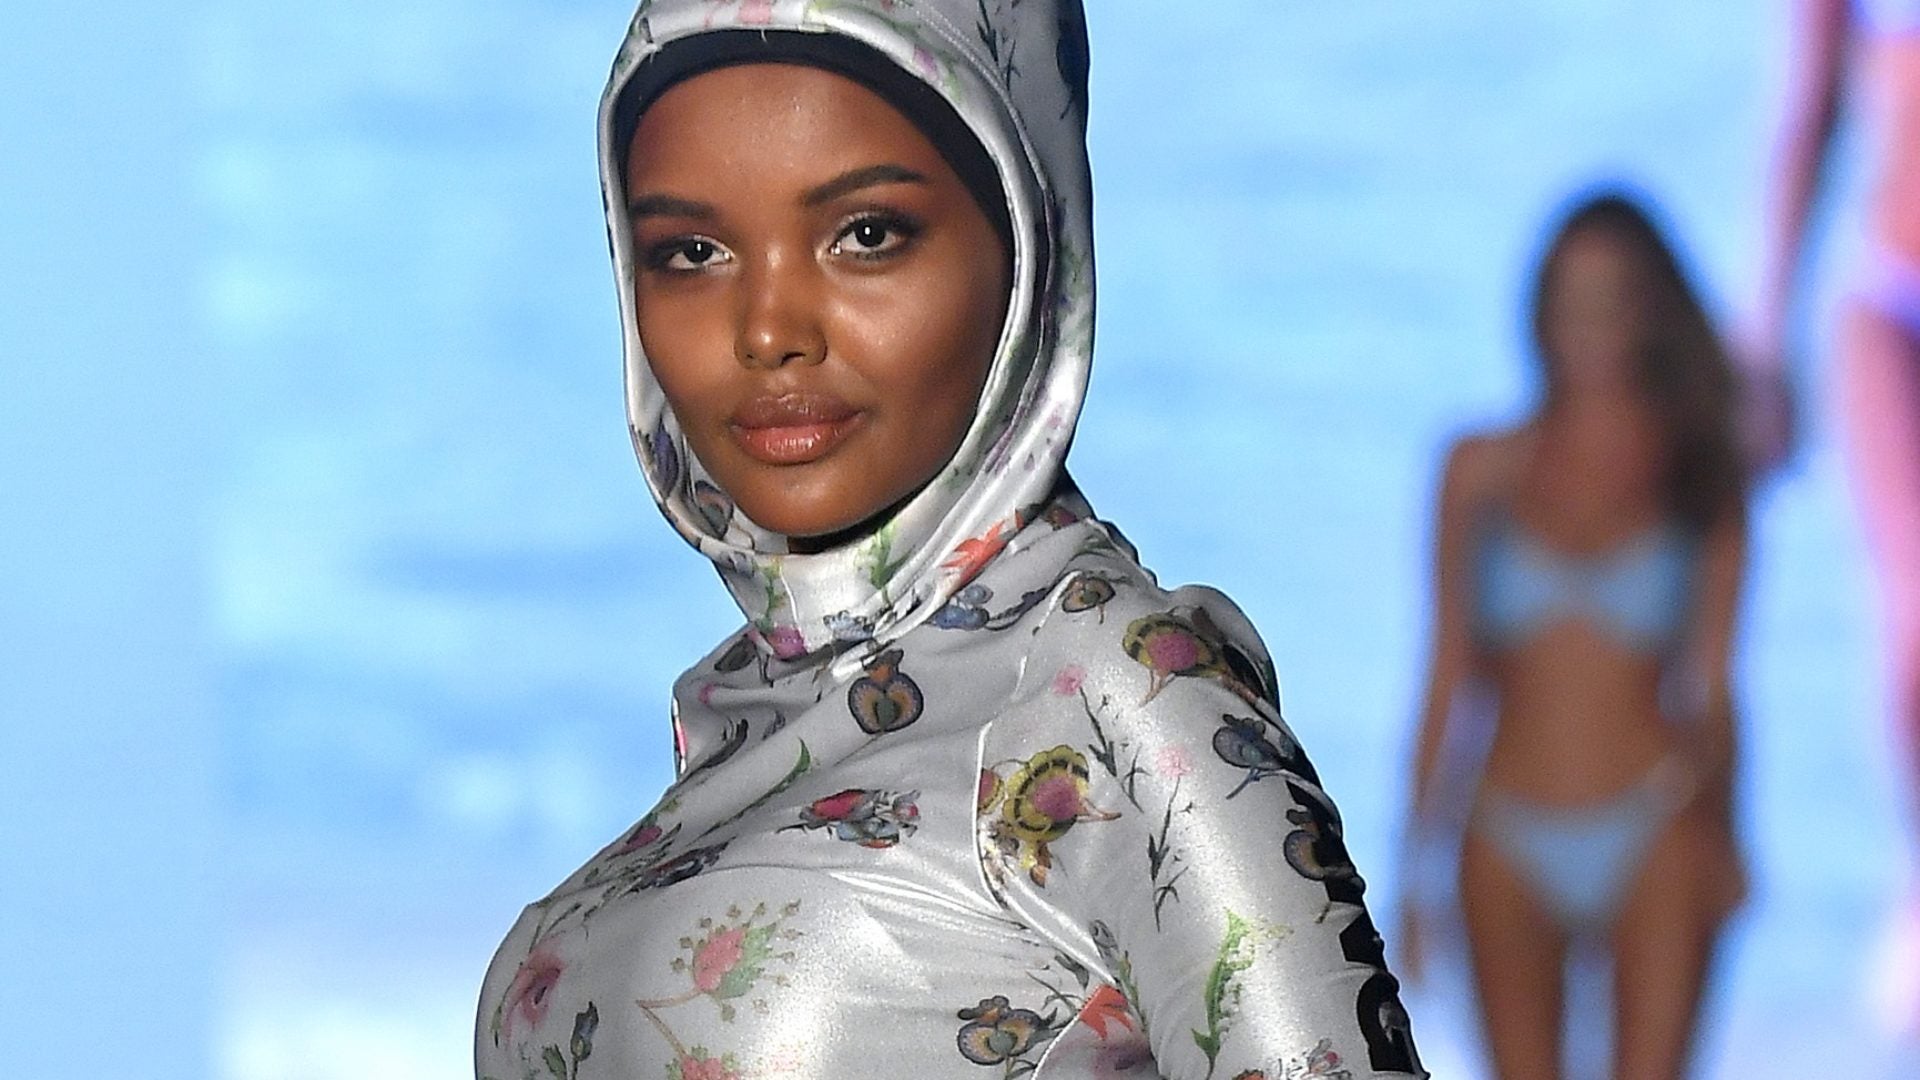 Cynthia Rowley Made A Custom Burkini For Muslim Model Halima Aden